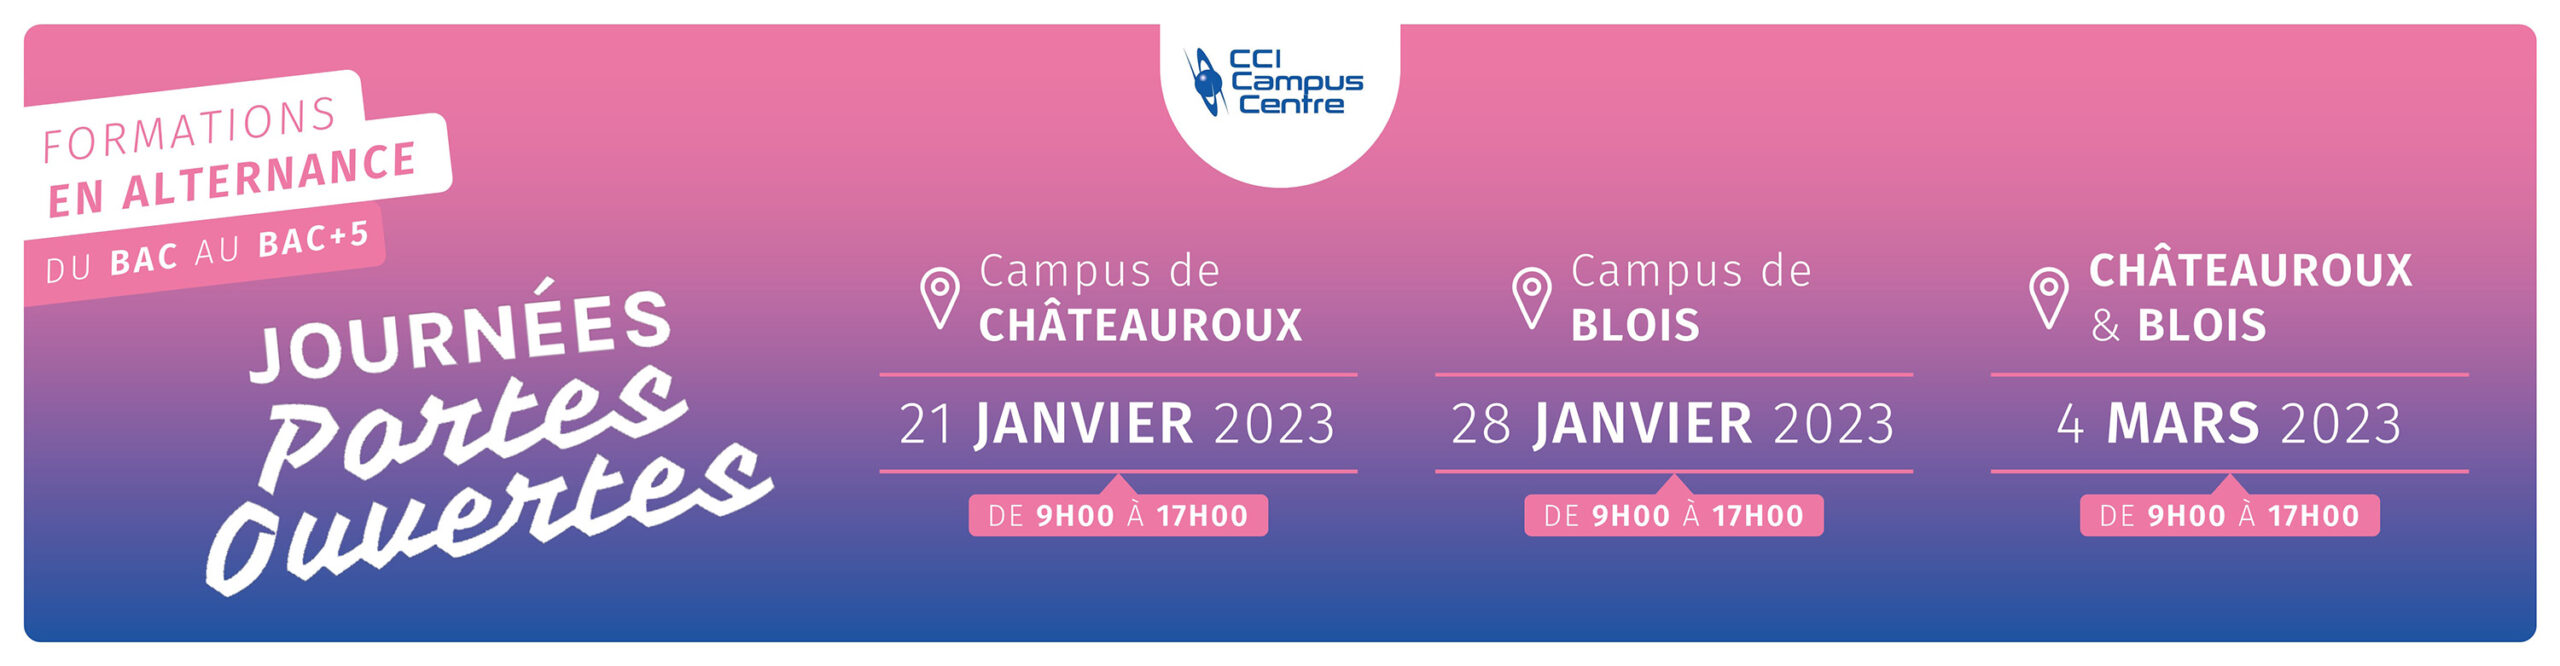 Journées portes ouvertes CCI Campus Centre à Chateauroux et à Blois